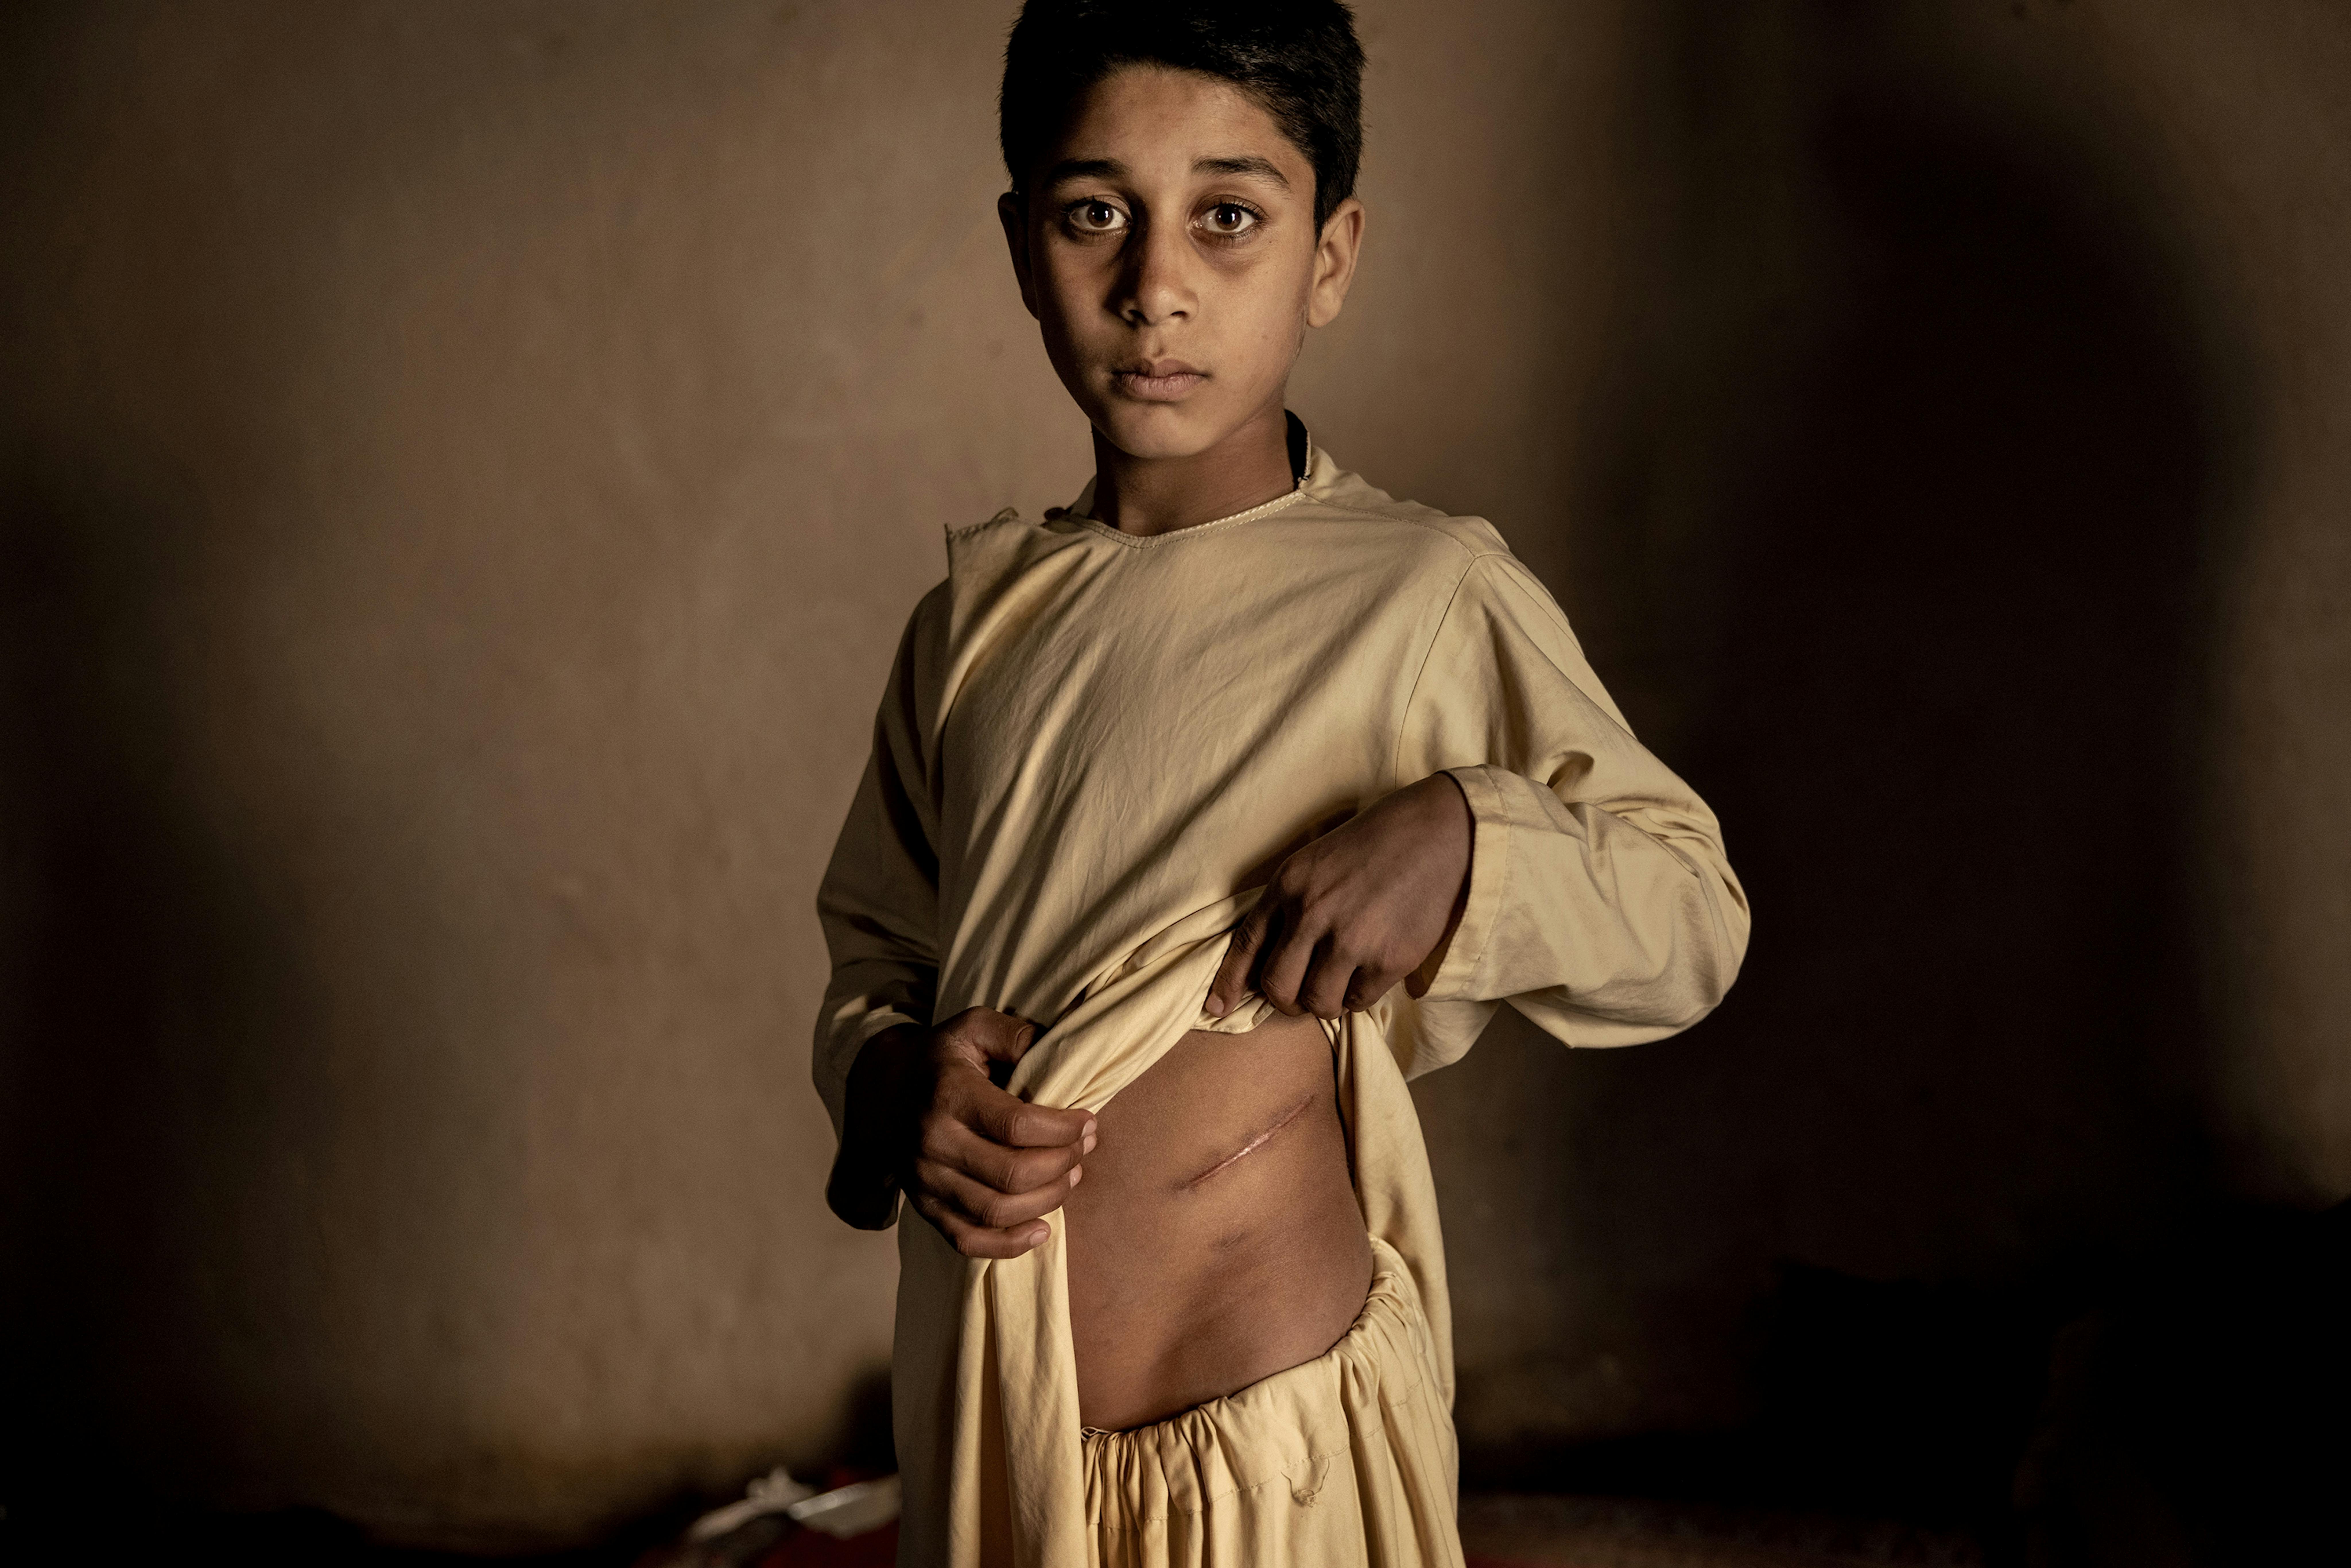 © Mads Nissen, Denmark, Politiken, Agency laif - Il prezzo della pace (Afghanistan): Il quindicenne Khalil Ahmad ha dovuto sacrificare il suo rene sinistro per volere dei suoi genitori. Avevano urgente bisogno di soldi per nutrire i loro undici figli.